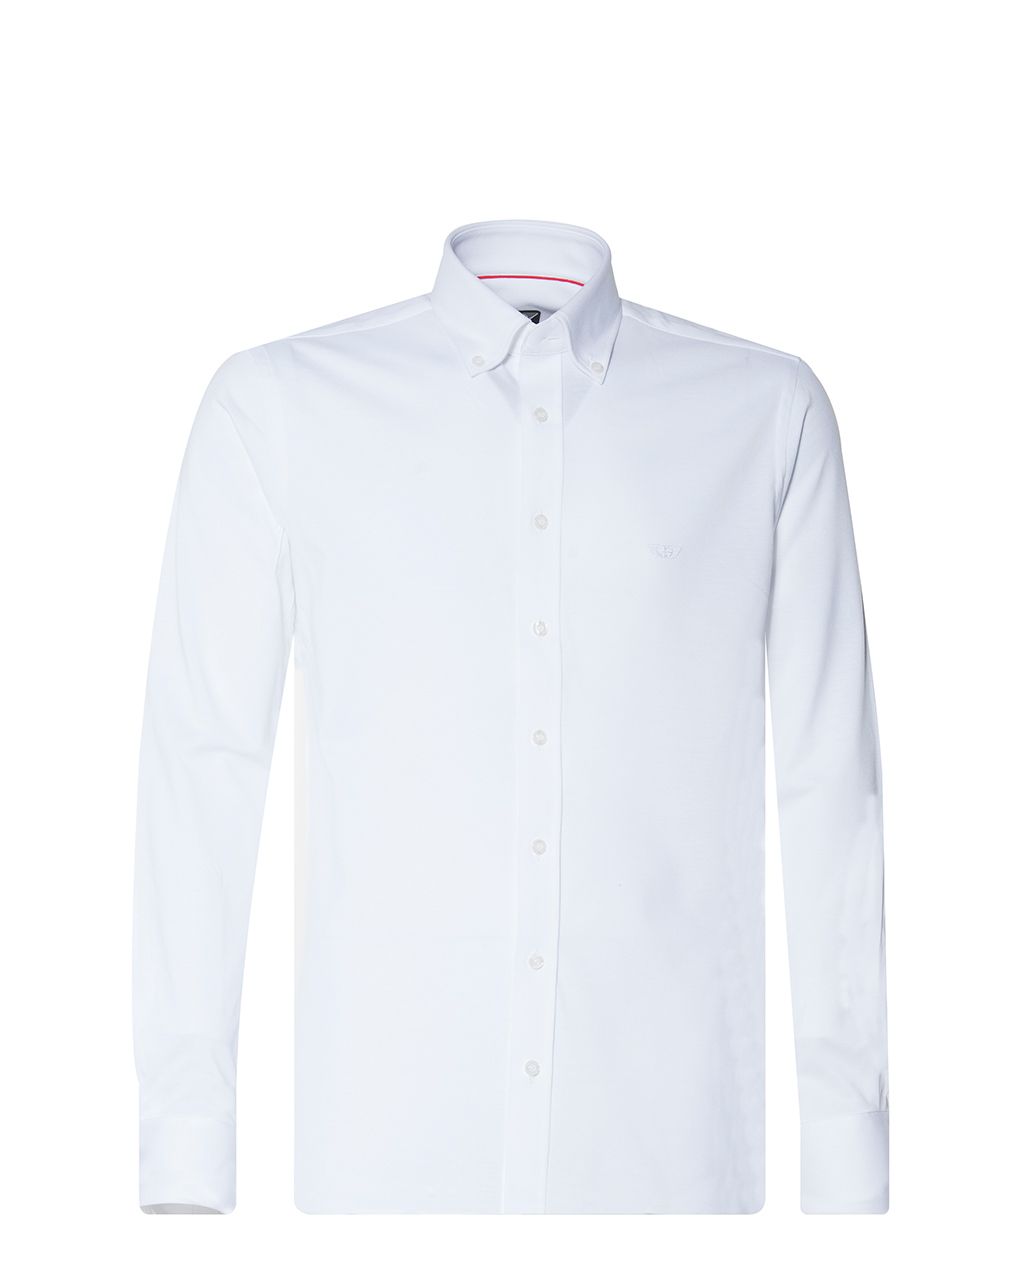 Donkervoort Overhemd LM Wit uni 059711-001-L